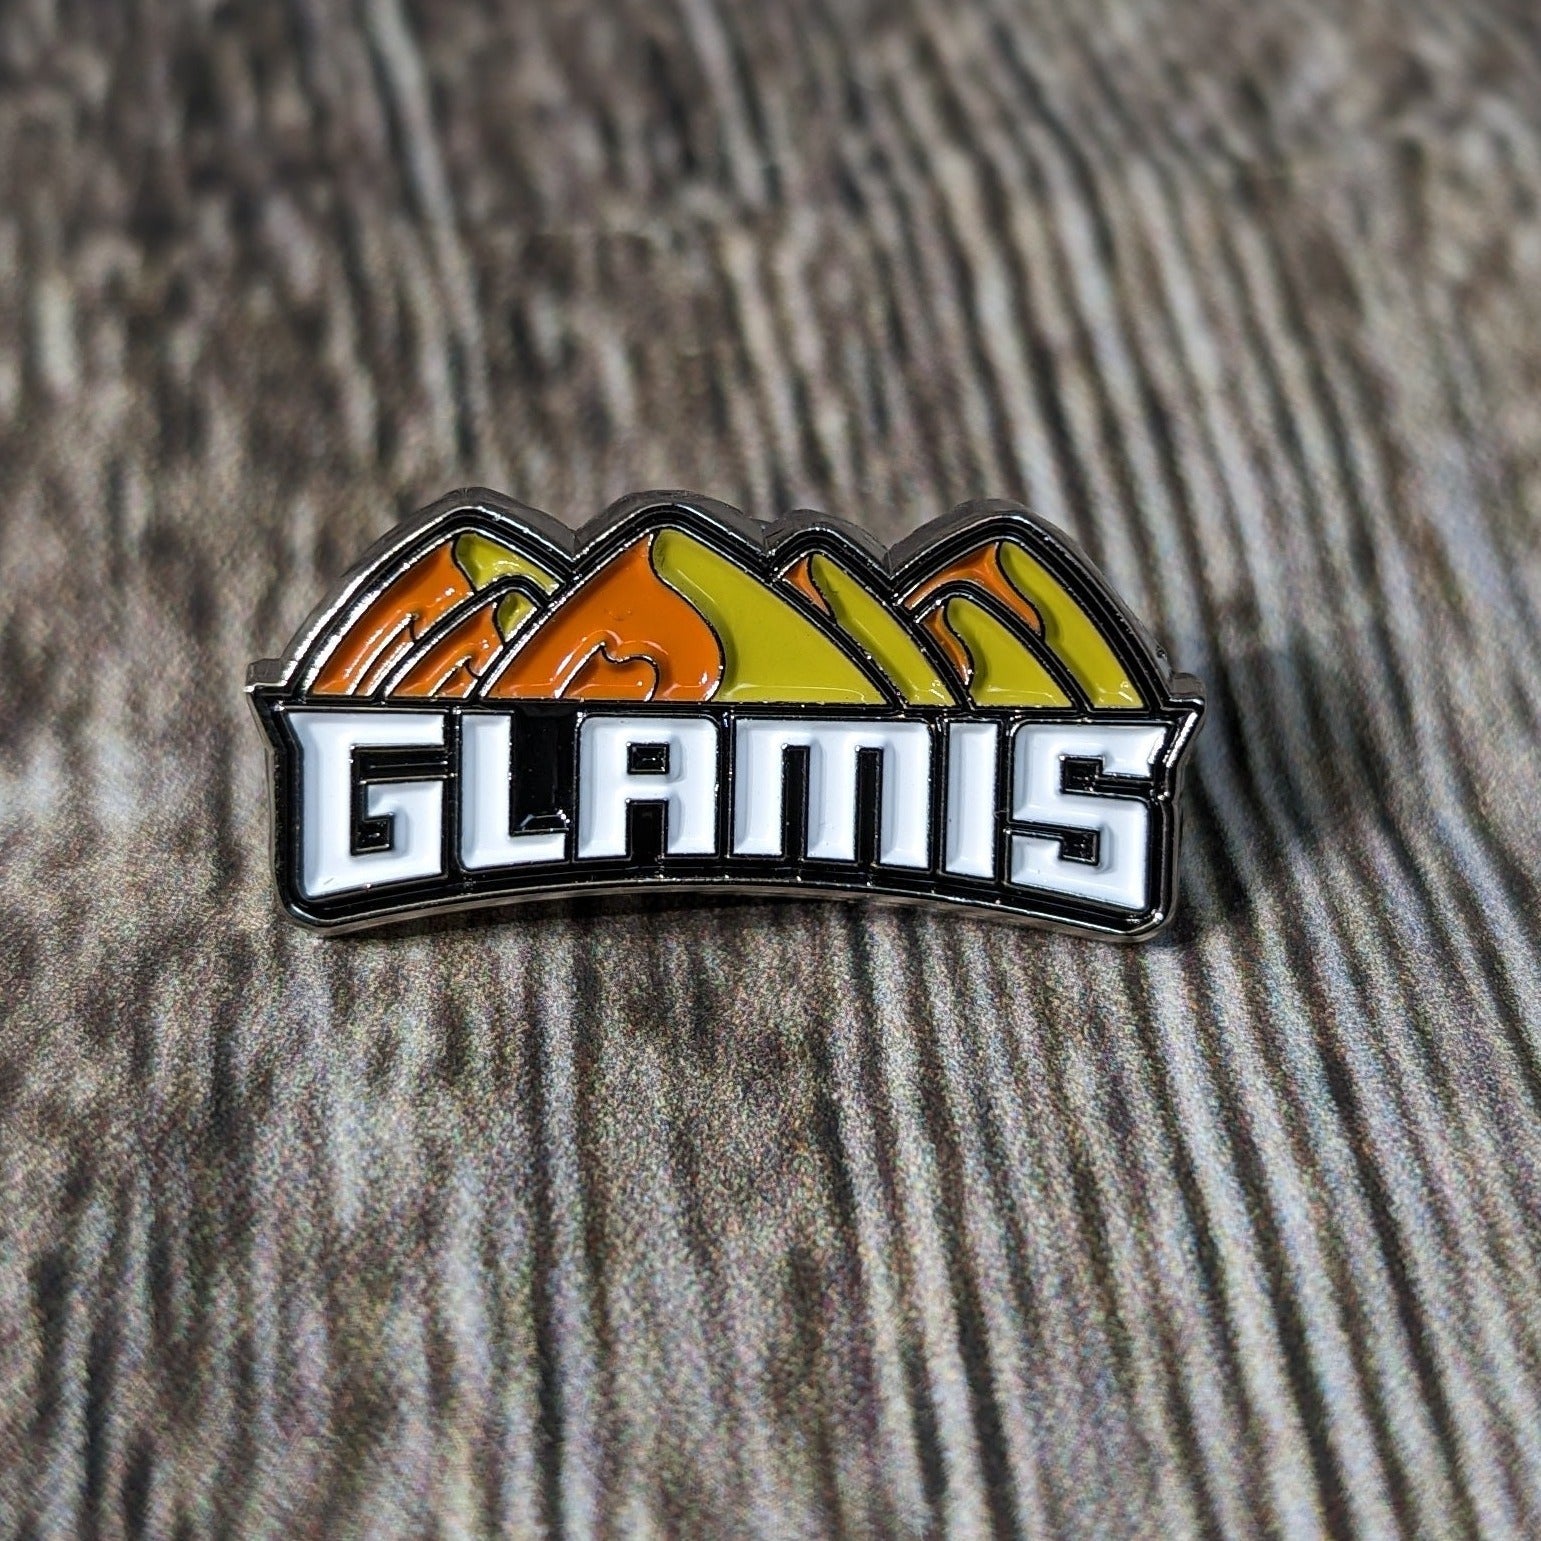 Enamel Lapel Pin - Glamis - Hat/Shirt